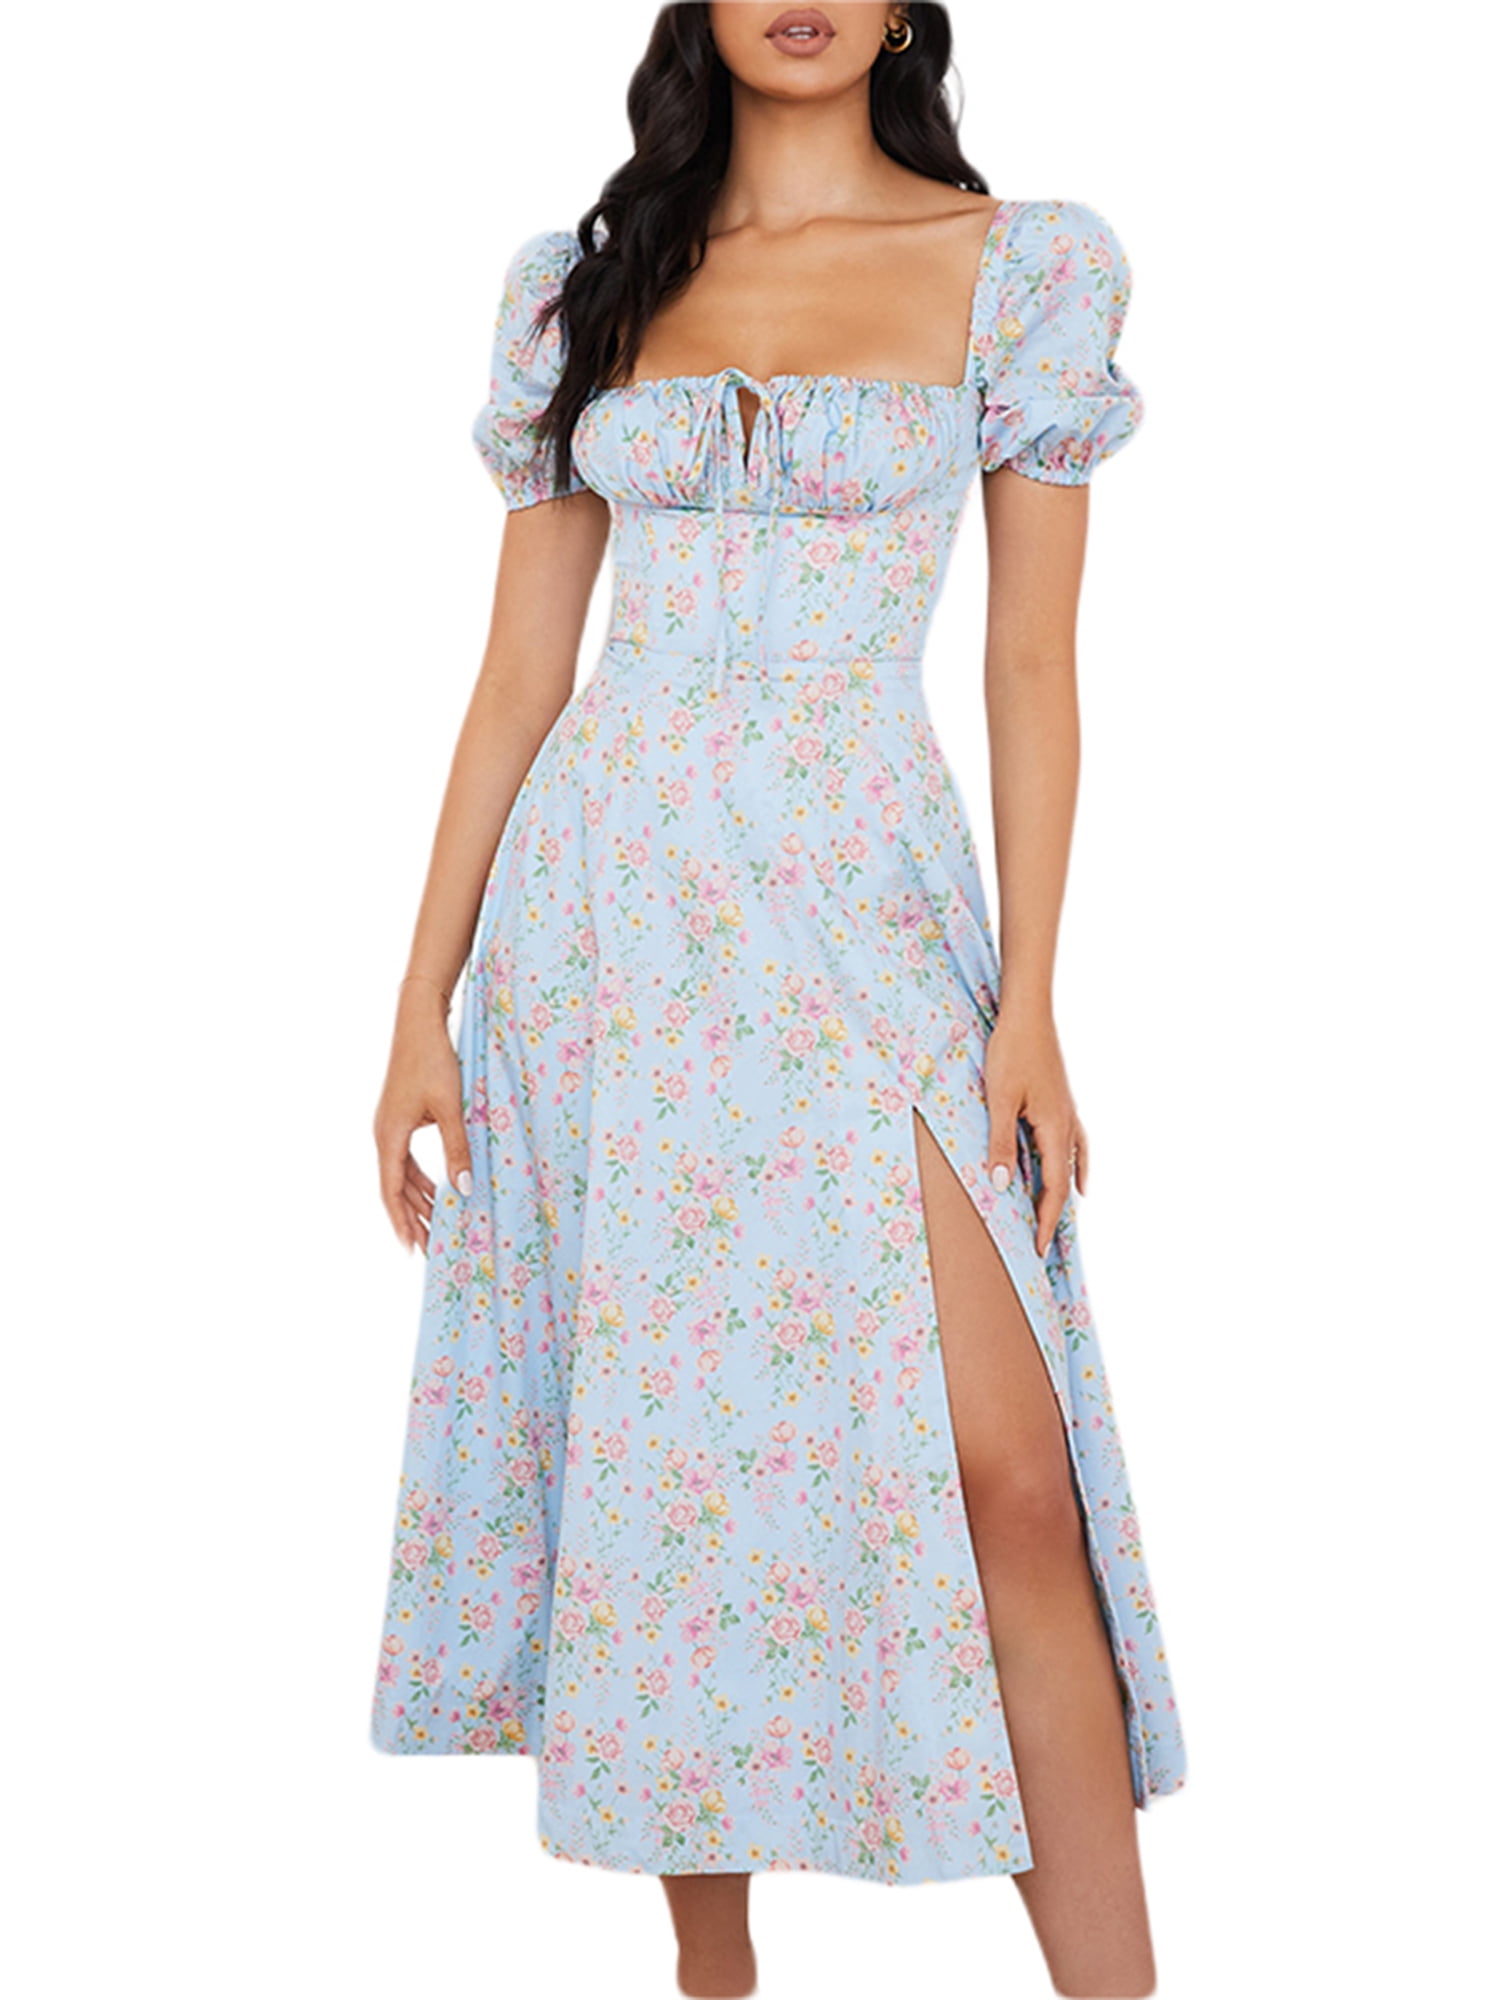 wybzd Women Casual Simplicity Floral Printed Pattern Long Dress Square Collar Short Sleeve Long Skirt Light blue XL - Walmart.com